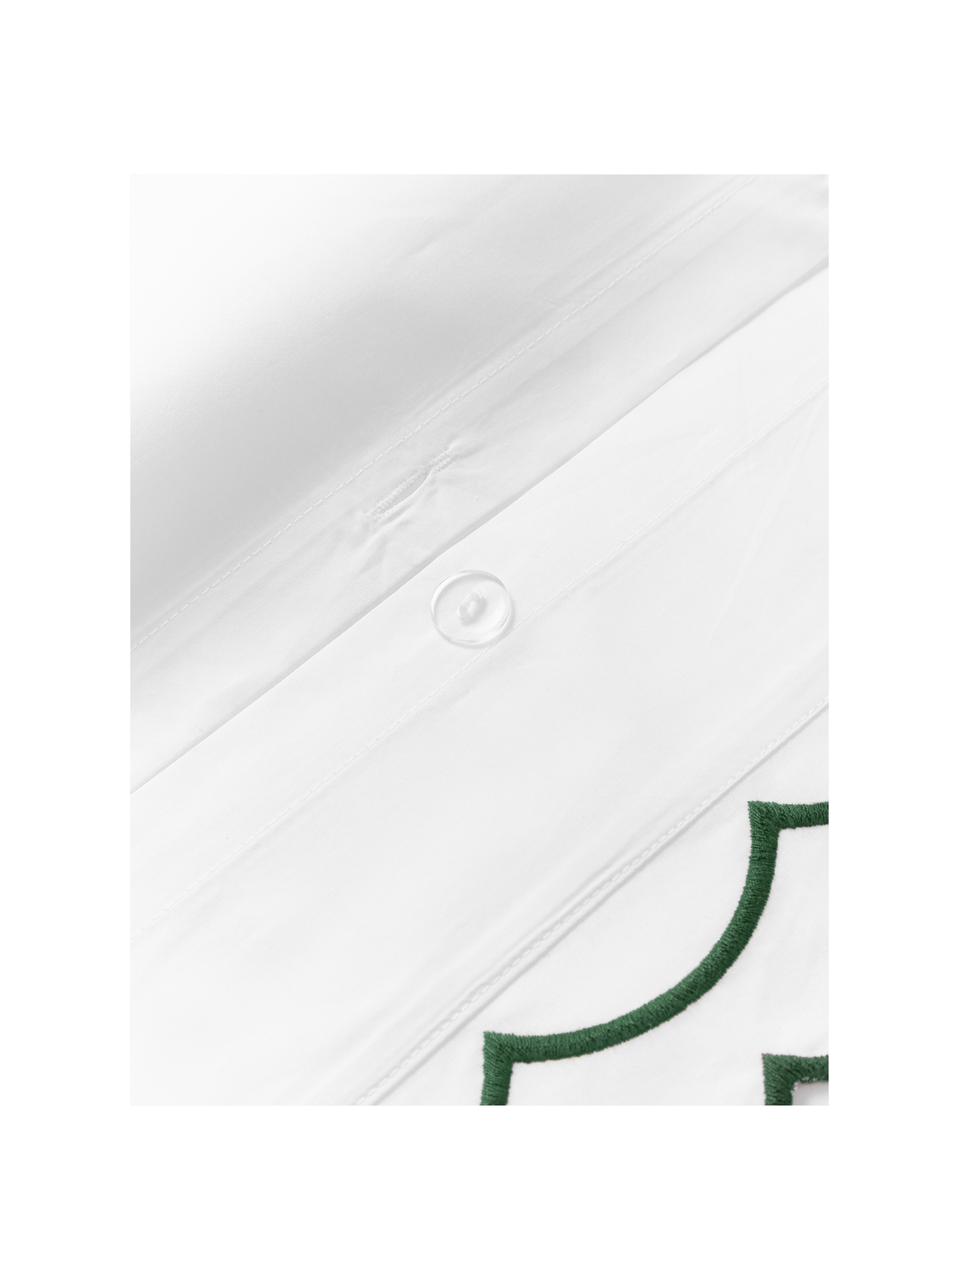 Copripiumino in cotone percalle con bordino ricamato ondulato Atina, Bianco, verde scuro, Larg. 200 x Lung. 200 cm